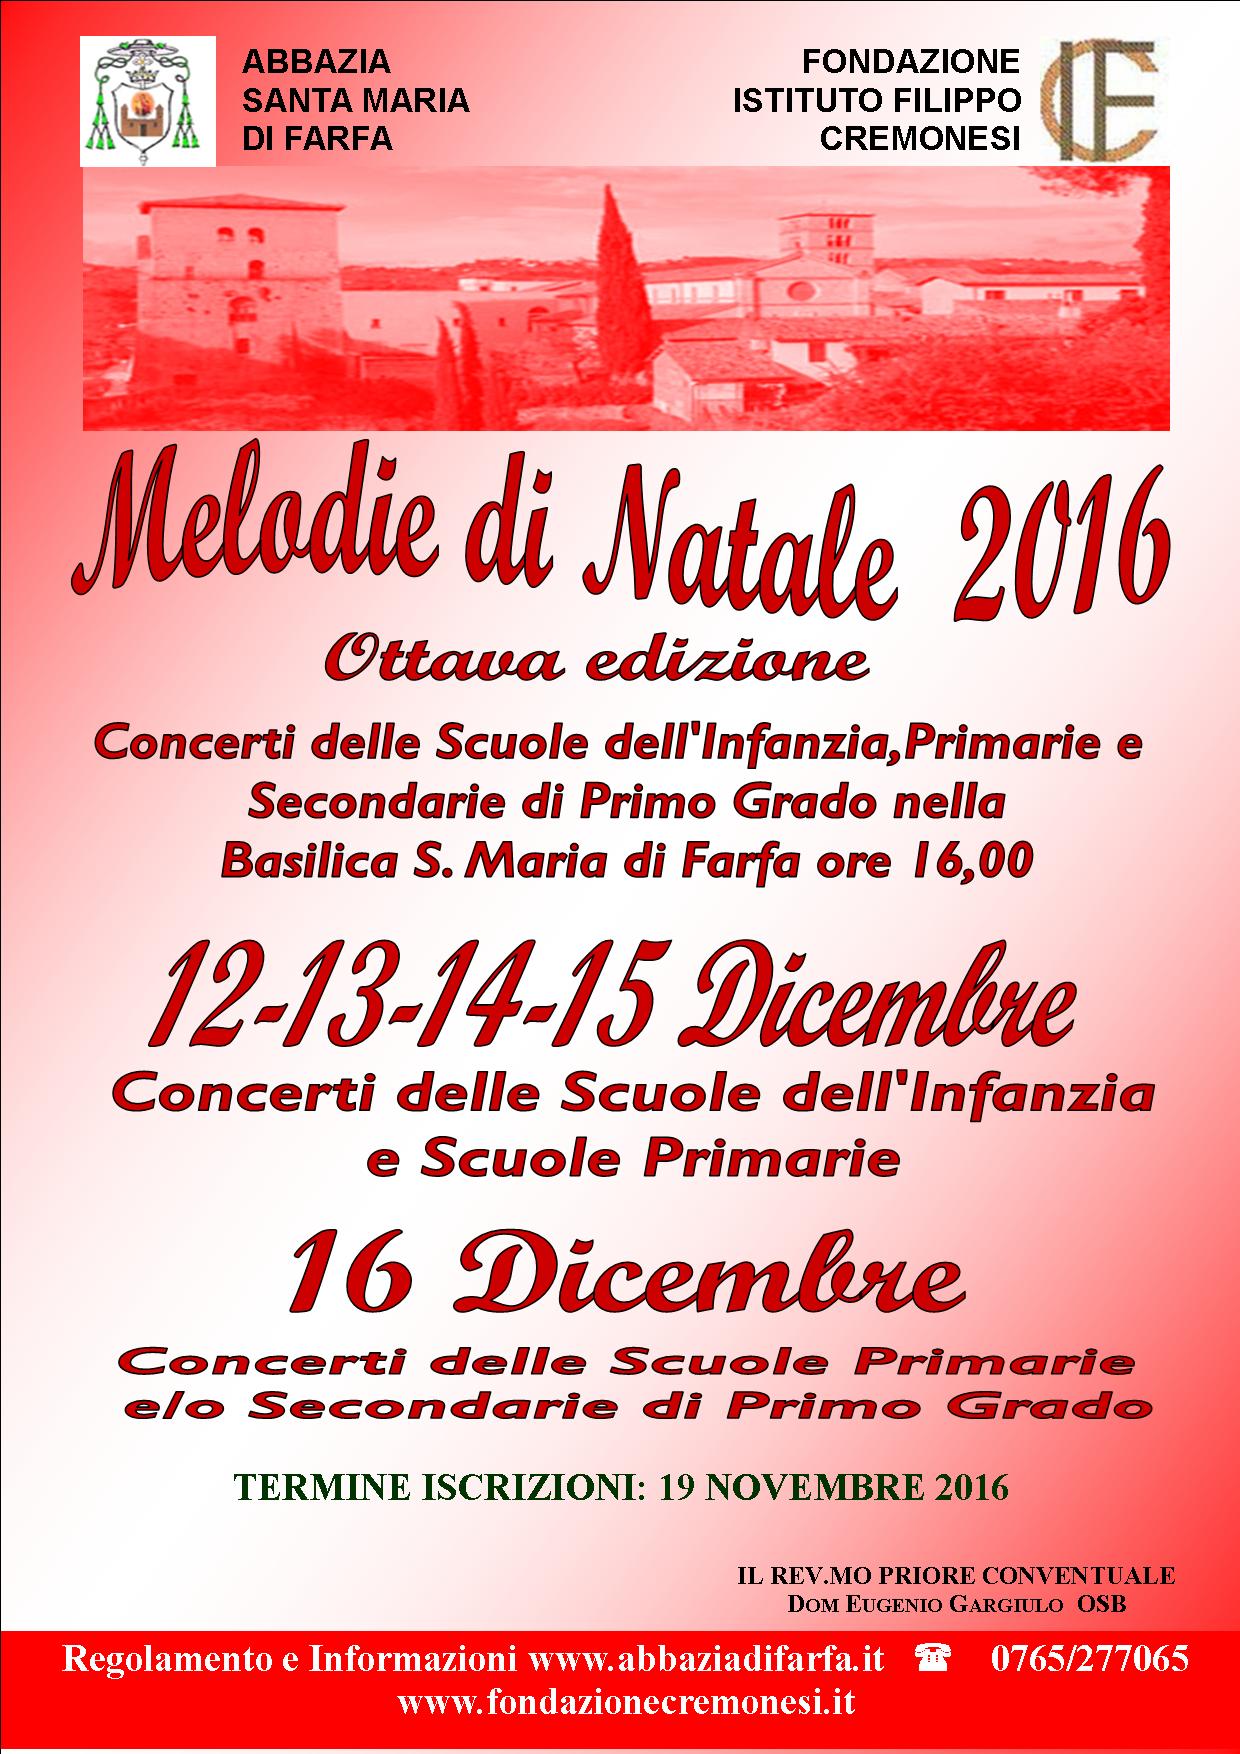 Adesioni aperte per "Melodie di Natale" – a Farfa dal 12 al 16 dicembre 2016